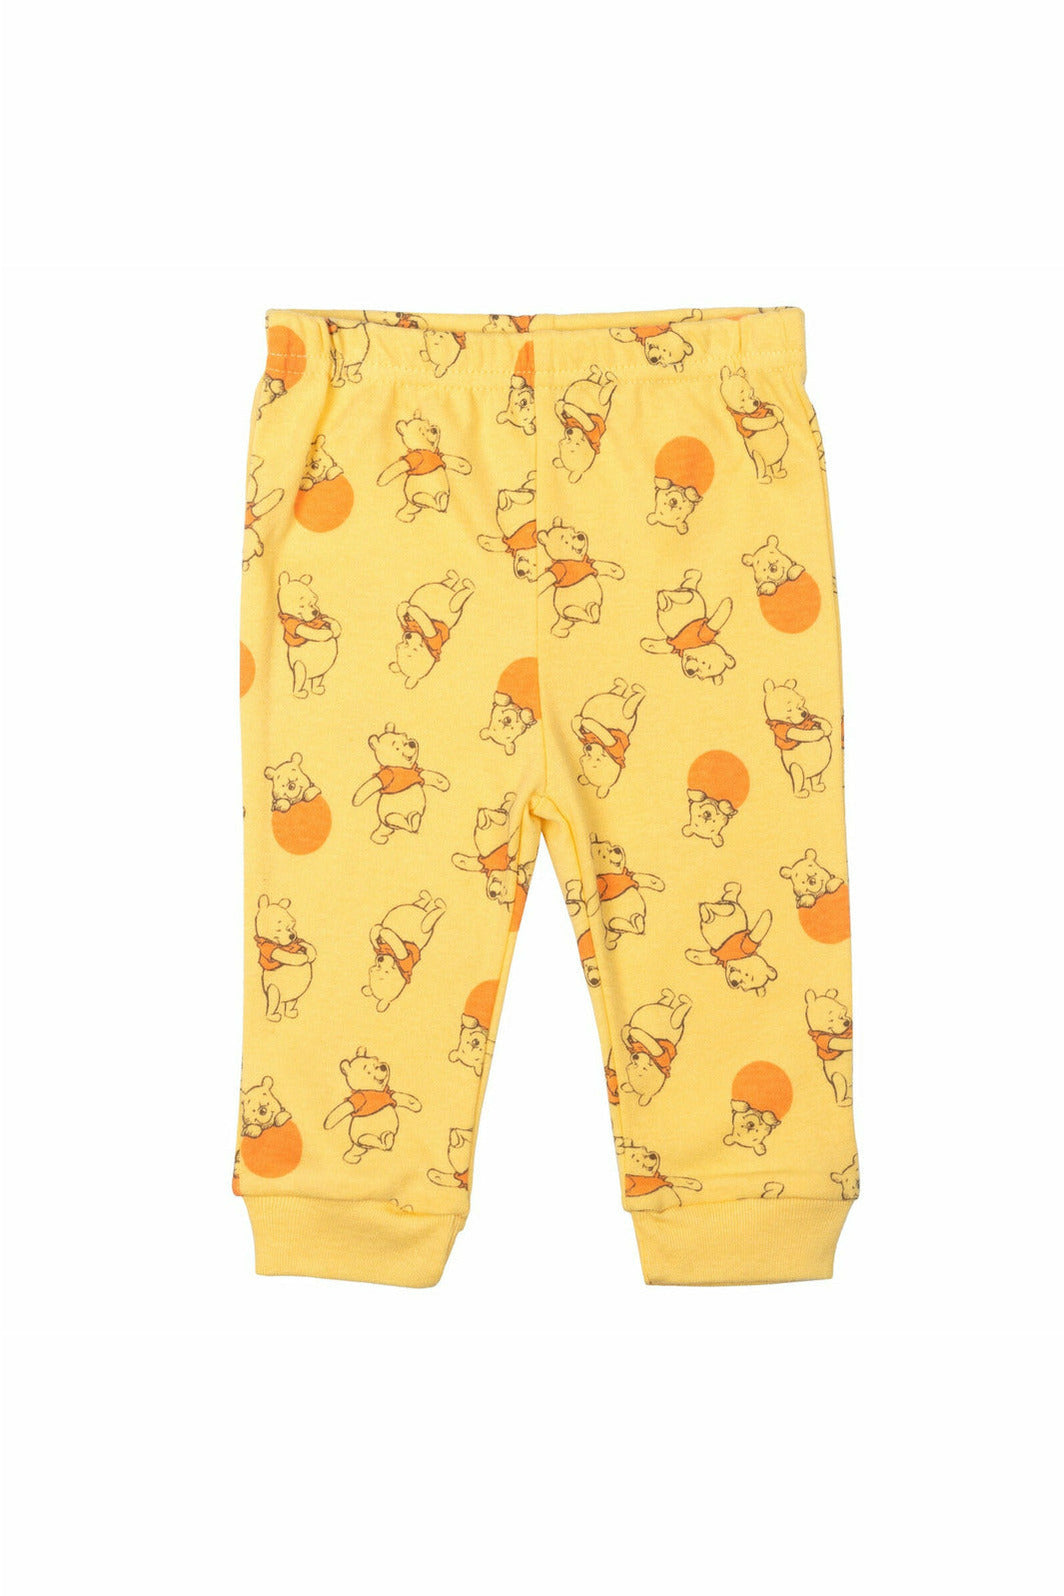 Winnie the Pooh 4 Piece Outfit Set: Bodysuit Pants Bib Hat